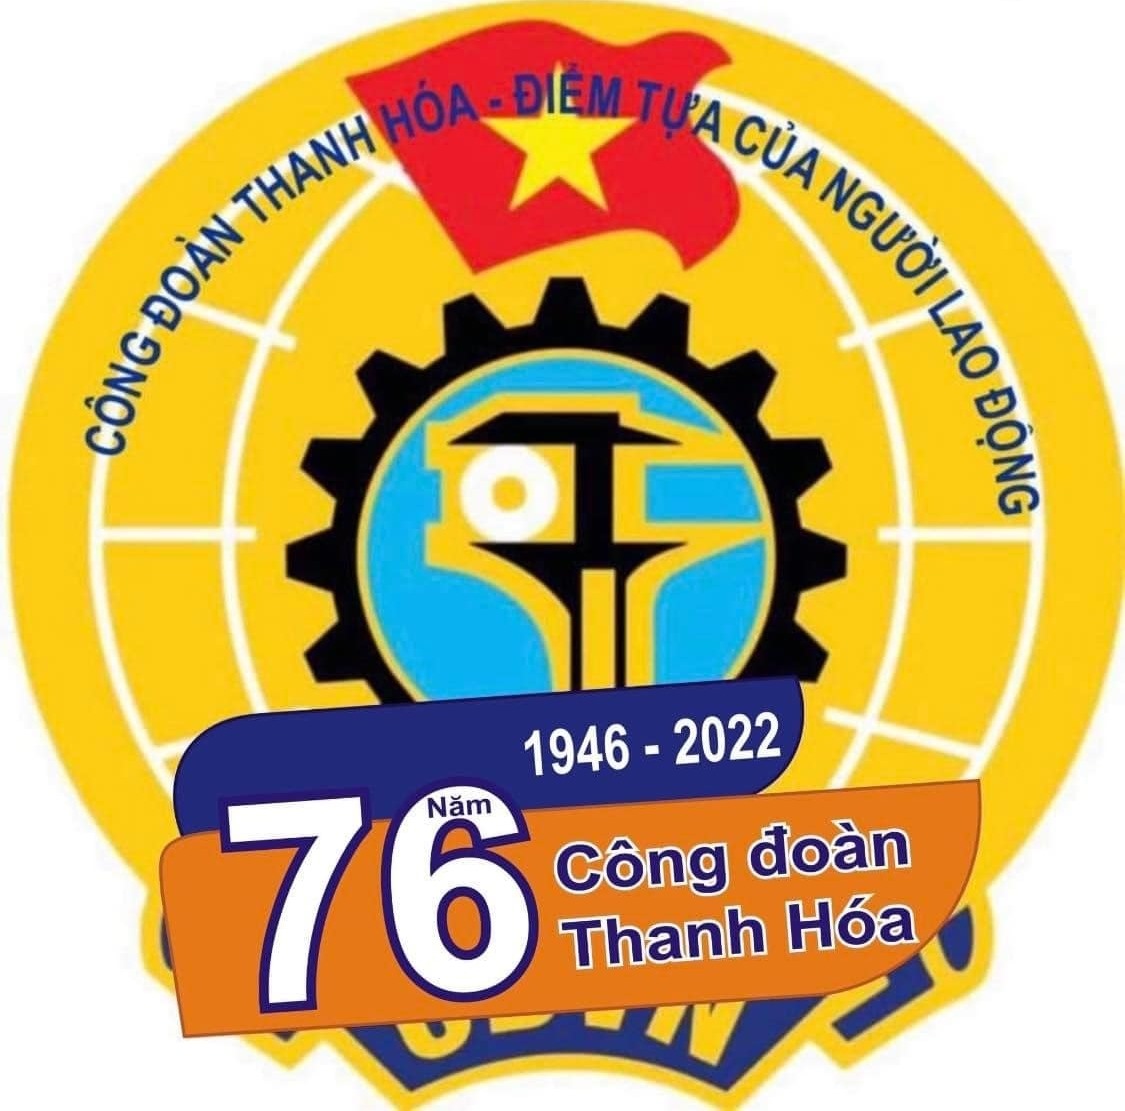 Công đoàn Thanh Hóa hướng tới kỷ niệm 76 năm ngày thành lập, với nhiều hoạt động ý nghĩa và sôi nổi. Ảnh: CĐTH